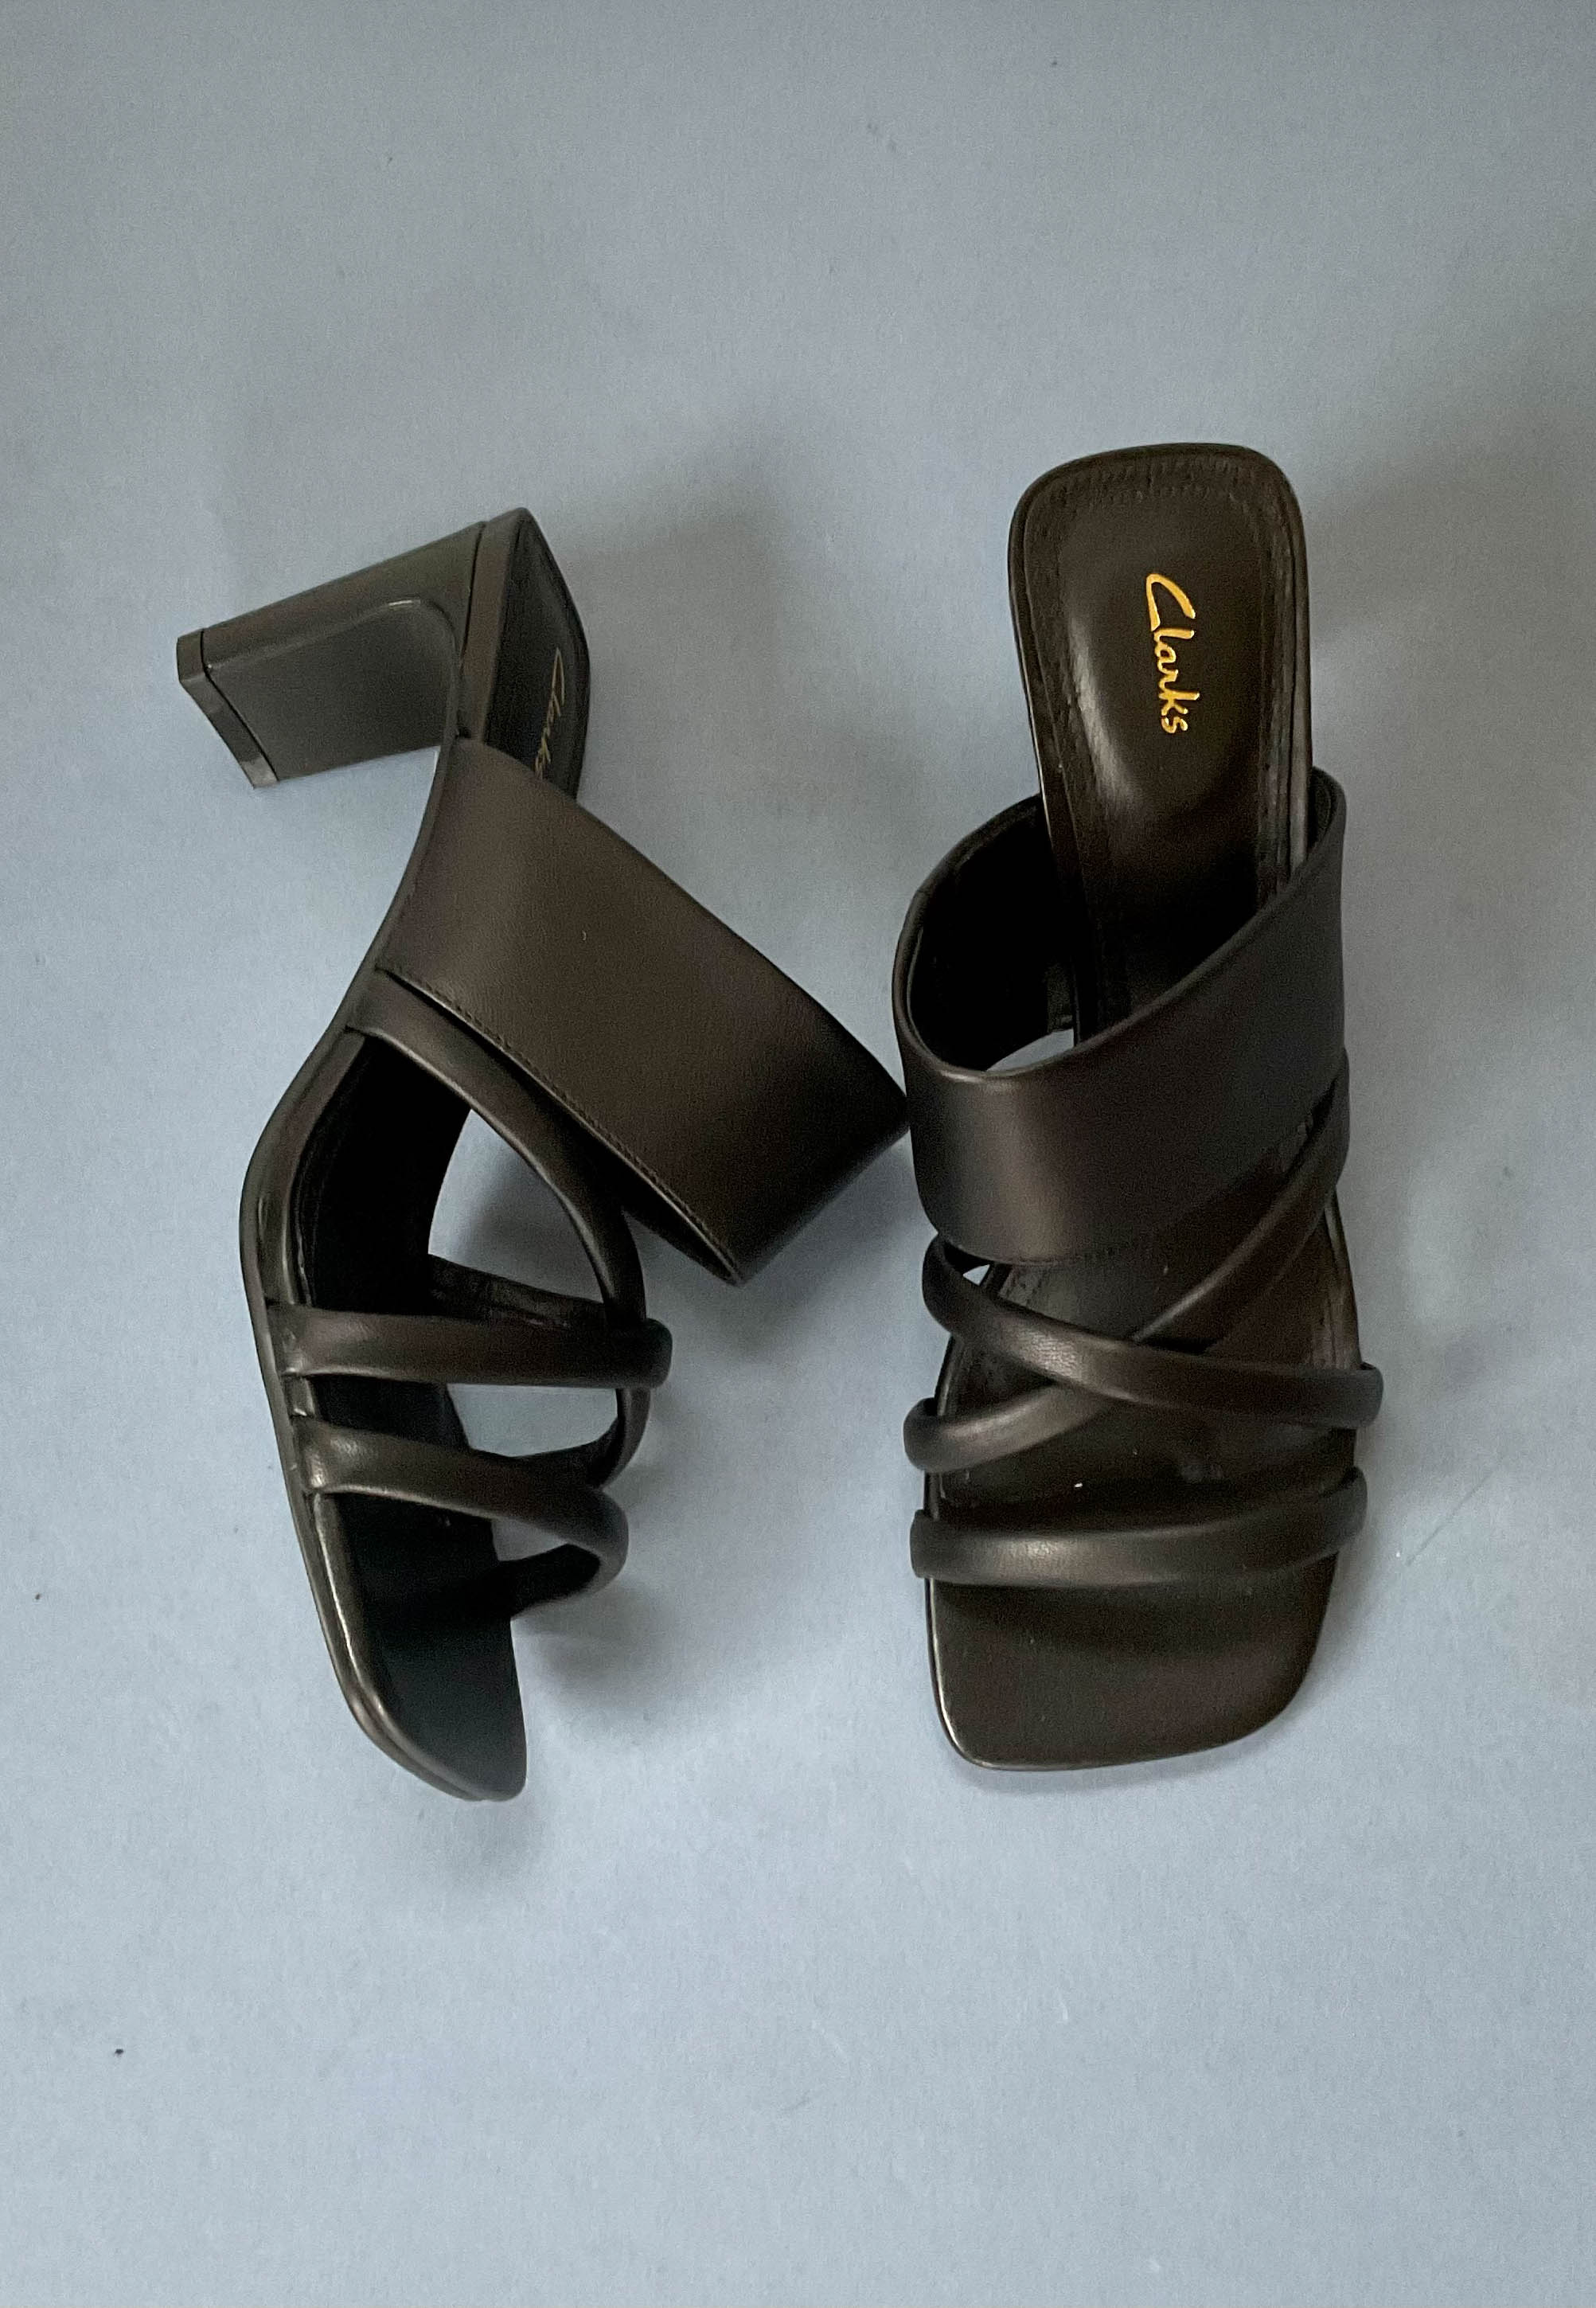 clarks 3 inch heels